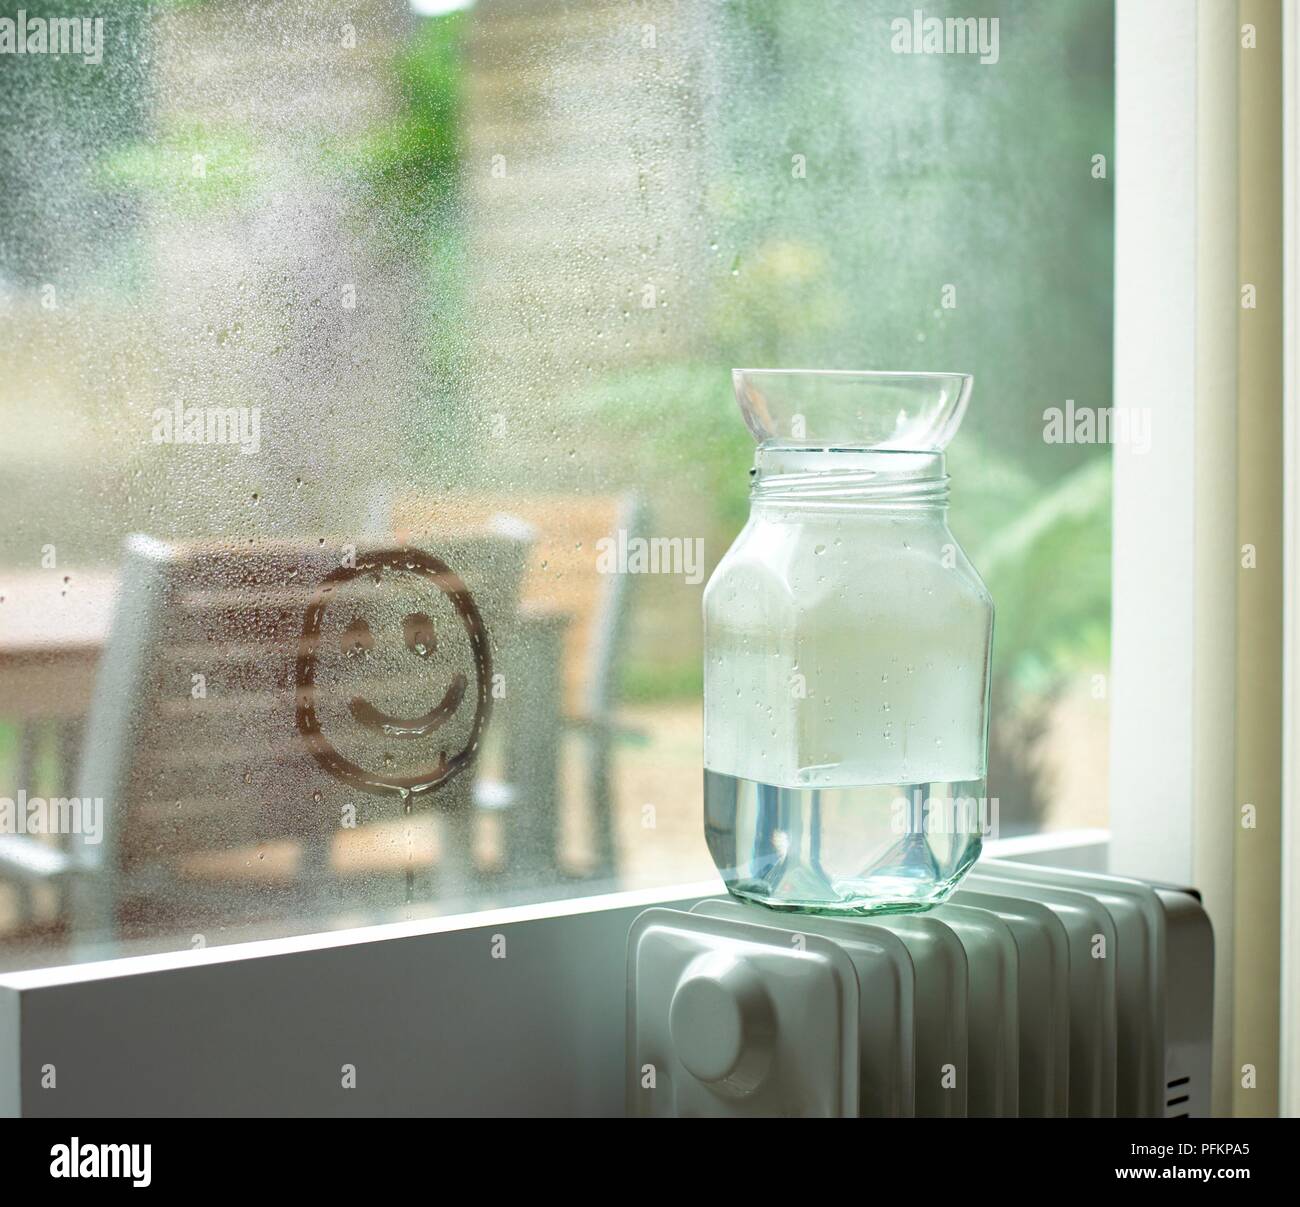 Pot d'eau et bol en verre sur le dessus du radiateur et smiley dessiné dans  la condensation sur la fenêtre Photo Stock - Alamy